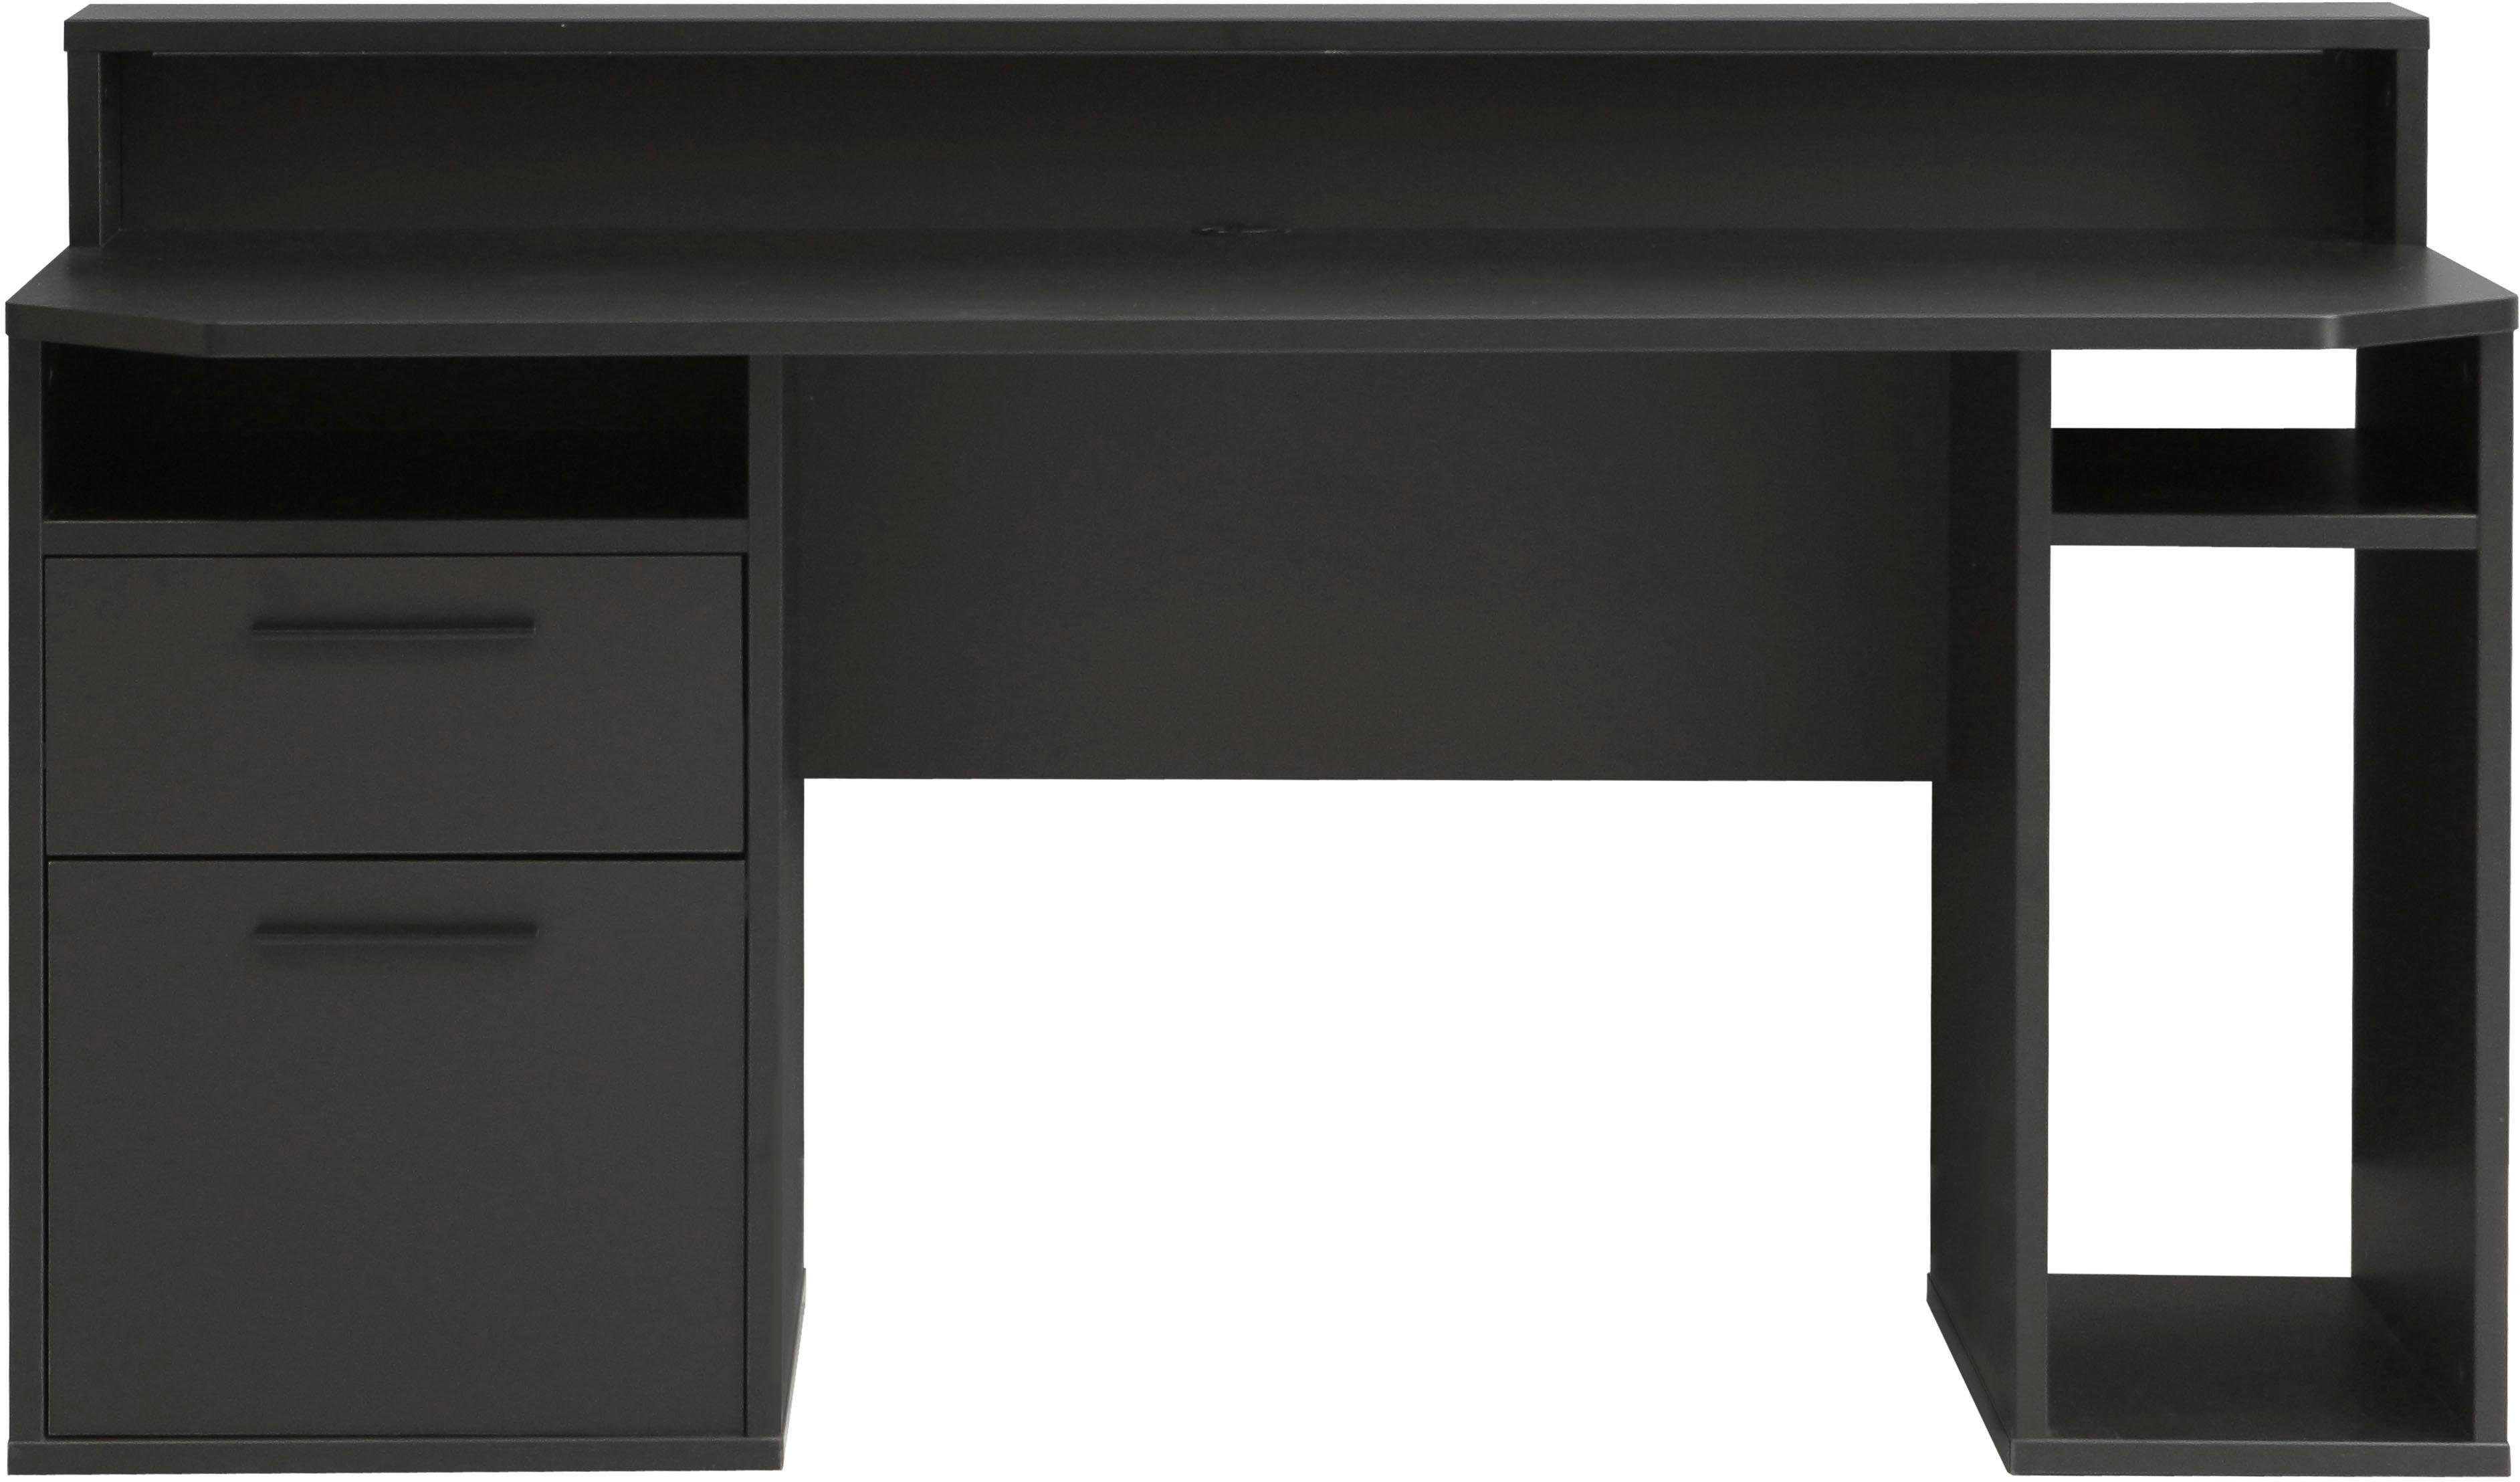 FORTE Gamingtisch Tezaur, schwarz RGB-Beleuchtung mit wahlweise